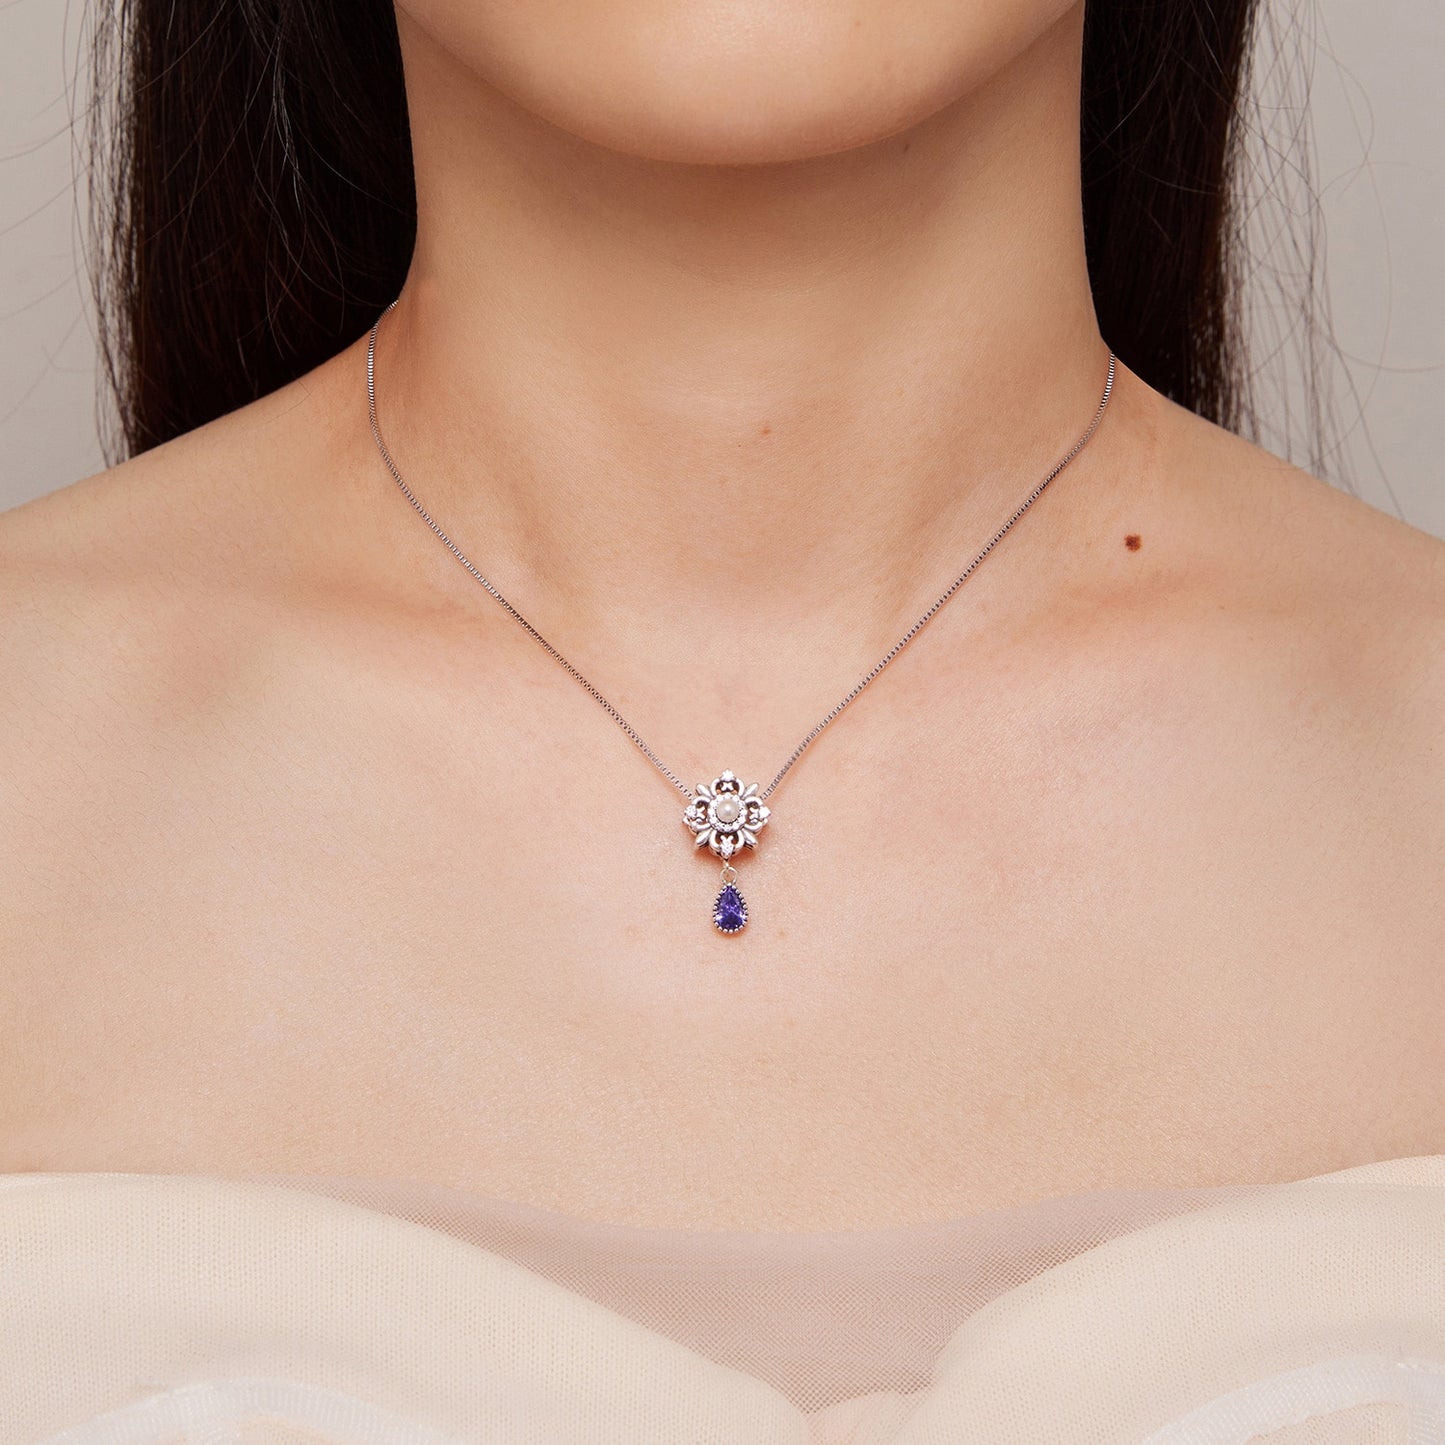 teardrop purple necklace